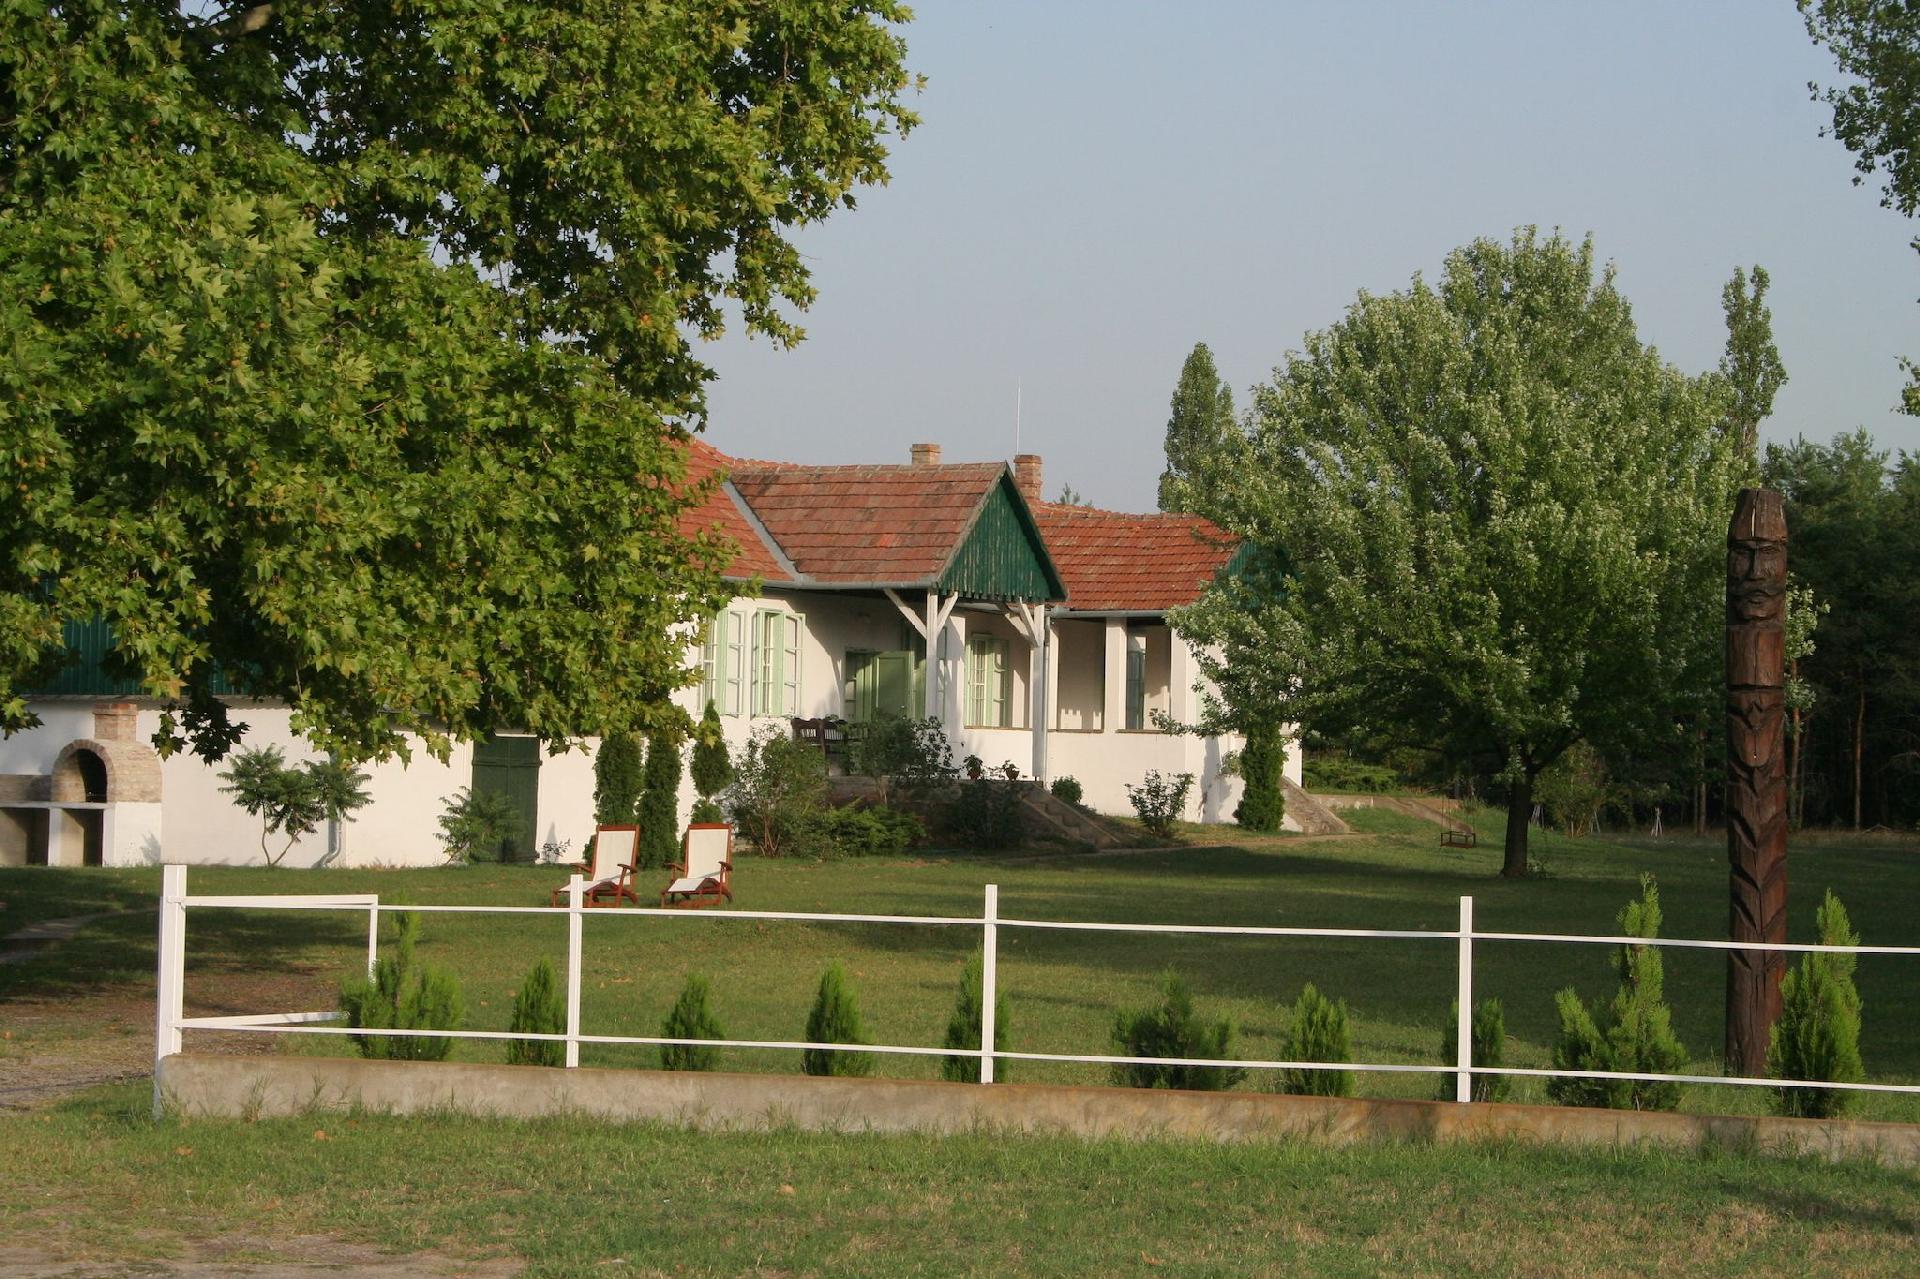 Typische Hütte in der ungarischen Landschaft